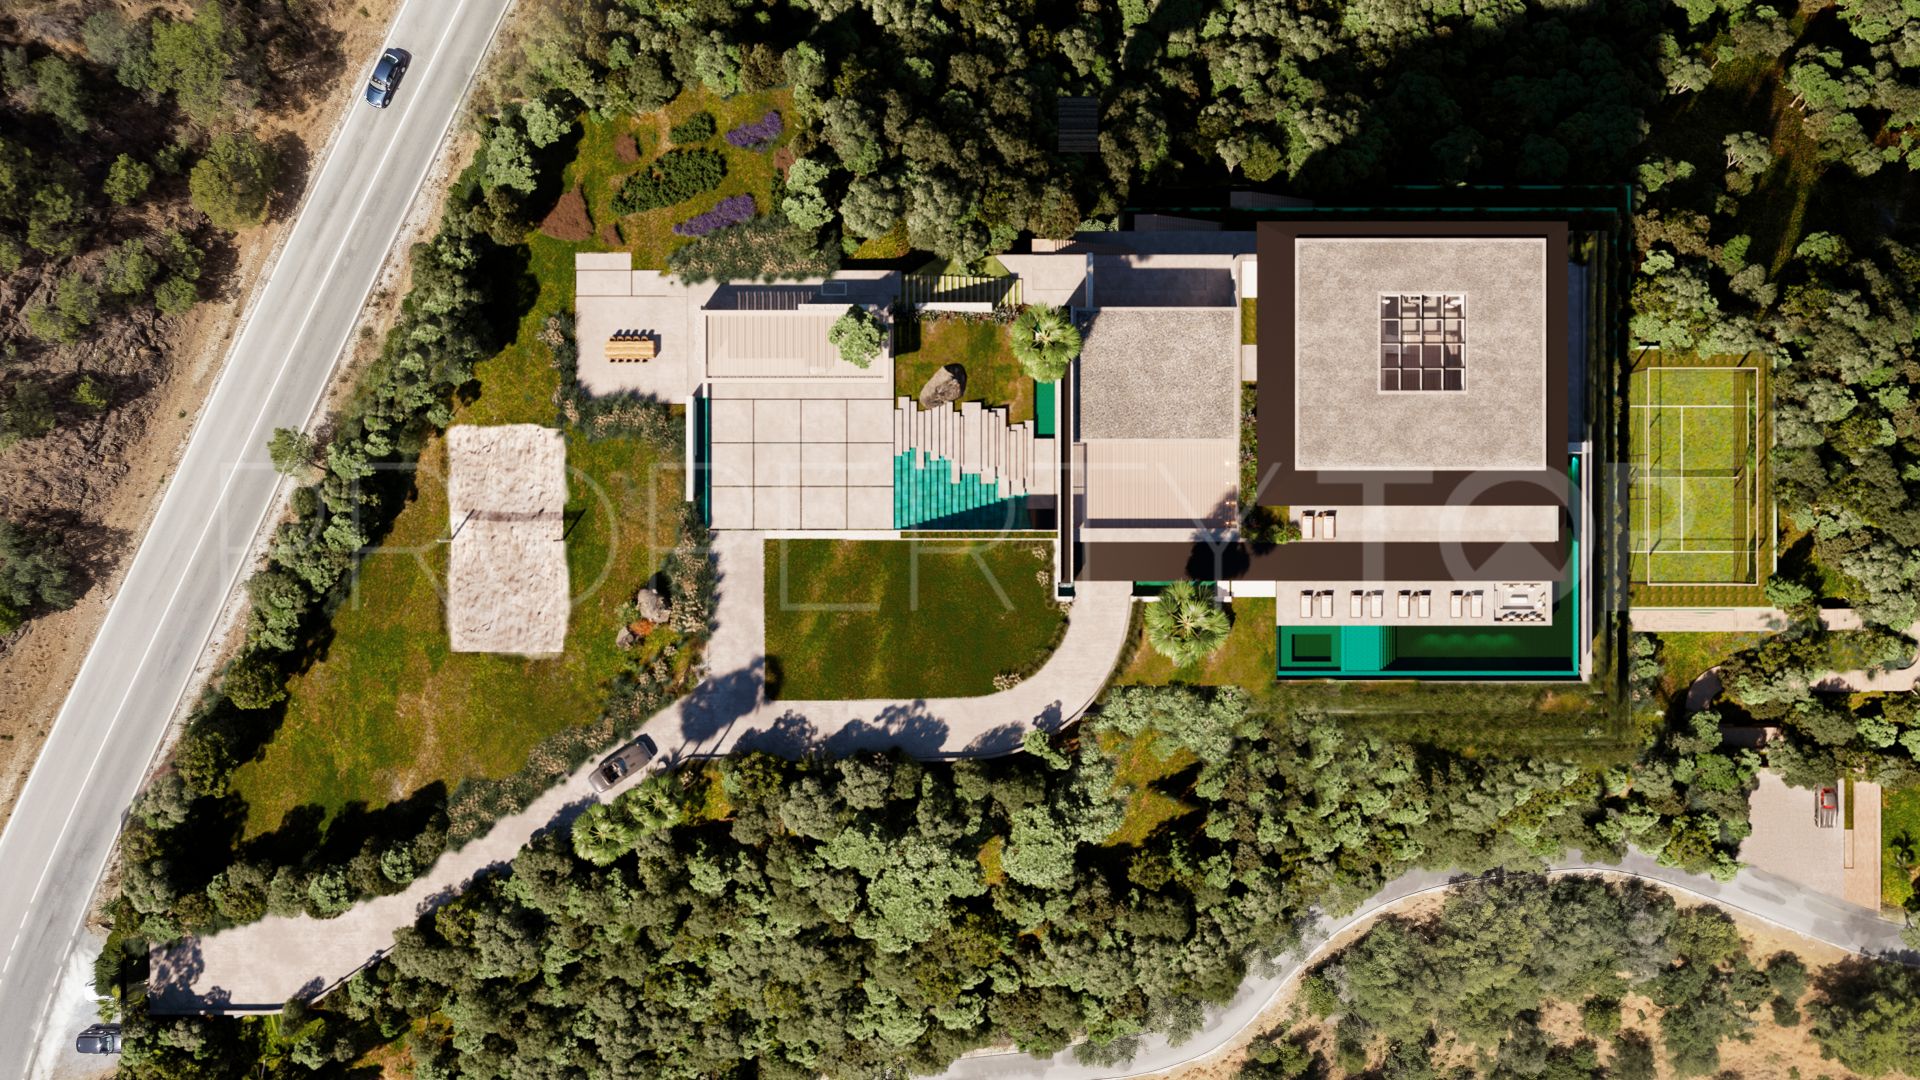 Villa in El Madroñal for sale